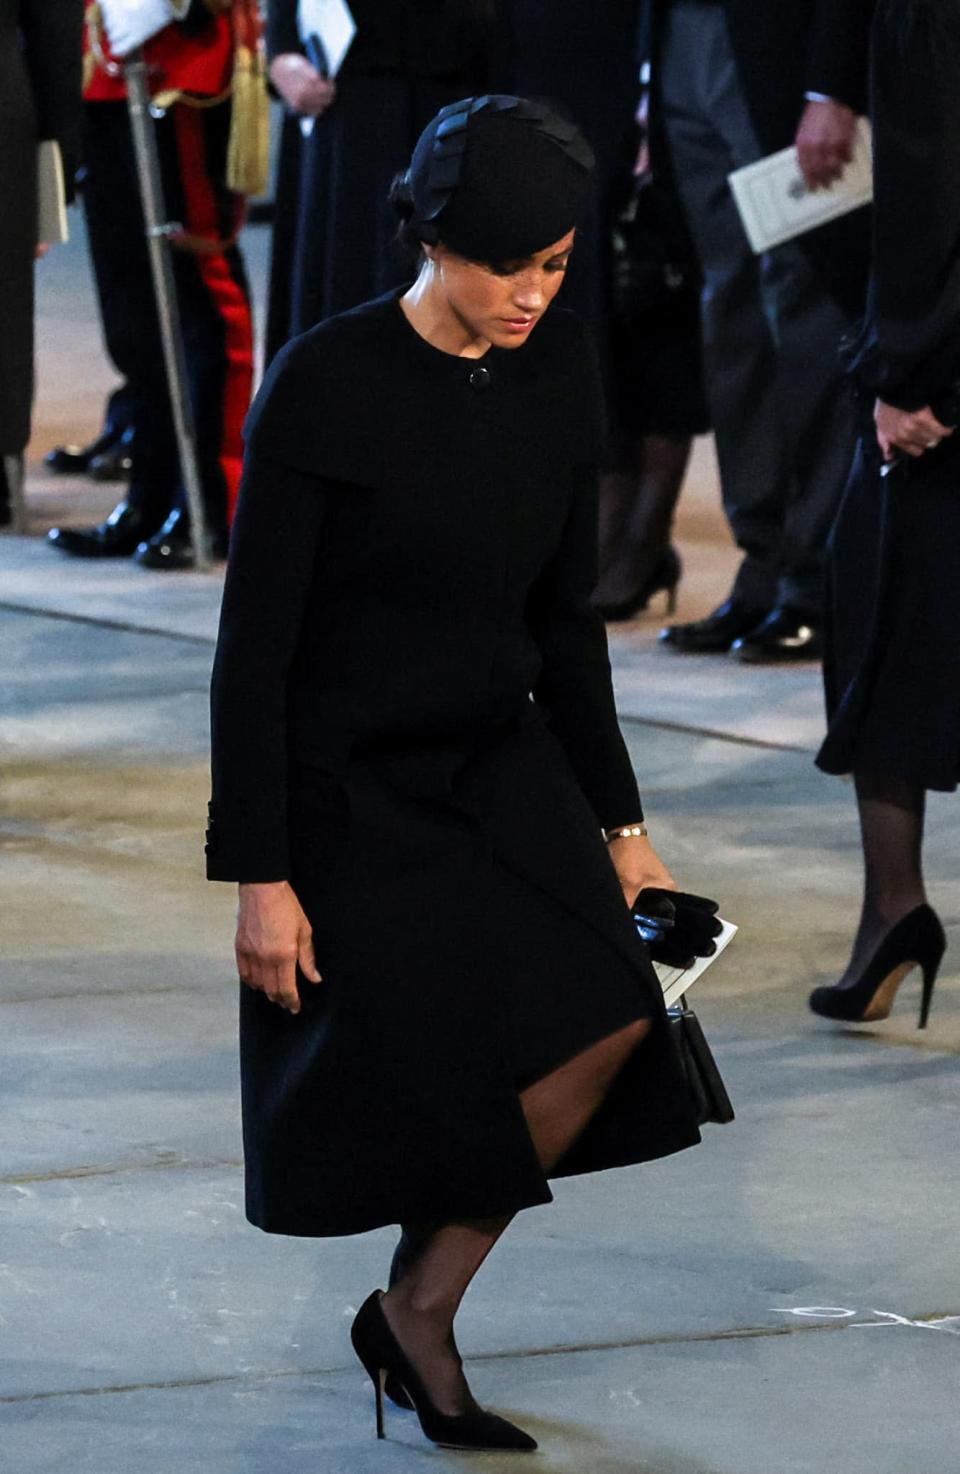 Meghan Markle faisant la révérence devant le cercueil de la reine Elizabeth, le 14 septembre 2022. - Alkis Konstantinidis - AFP